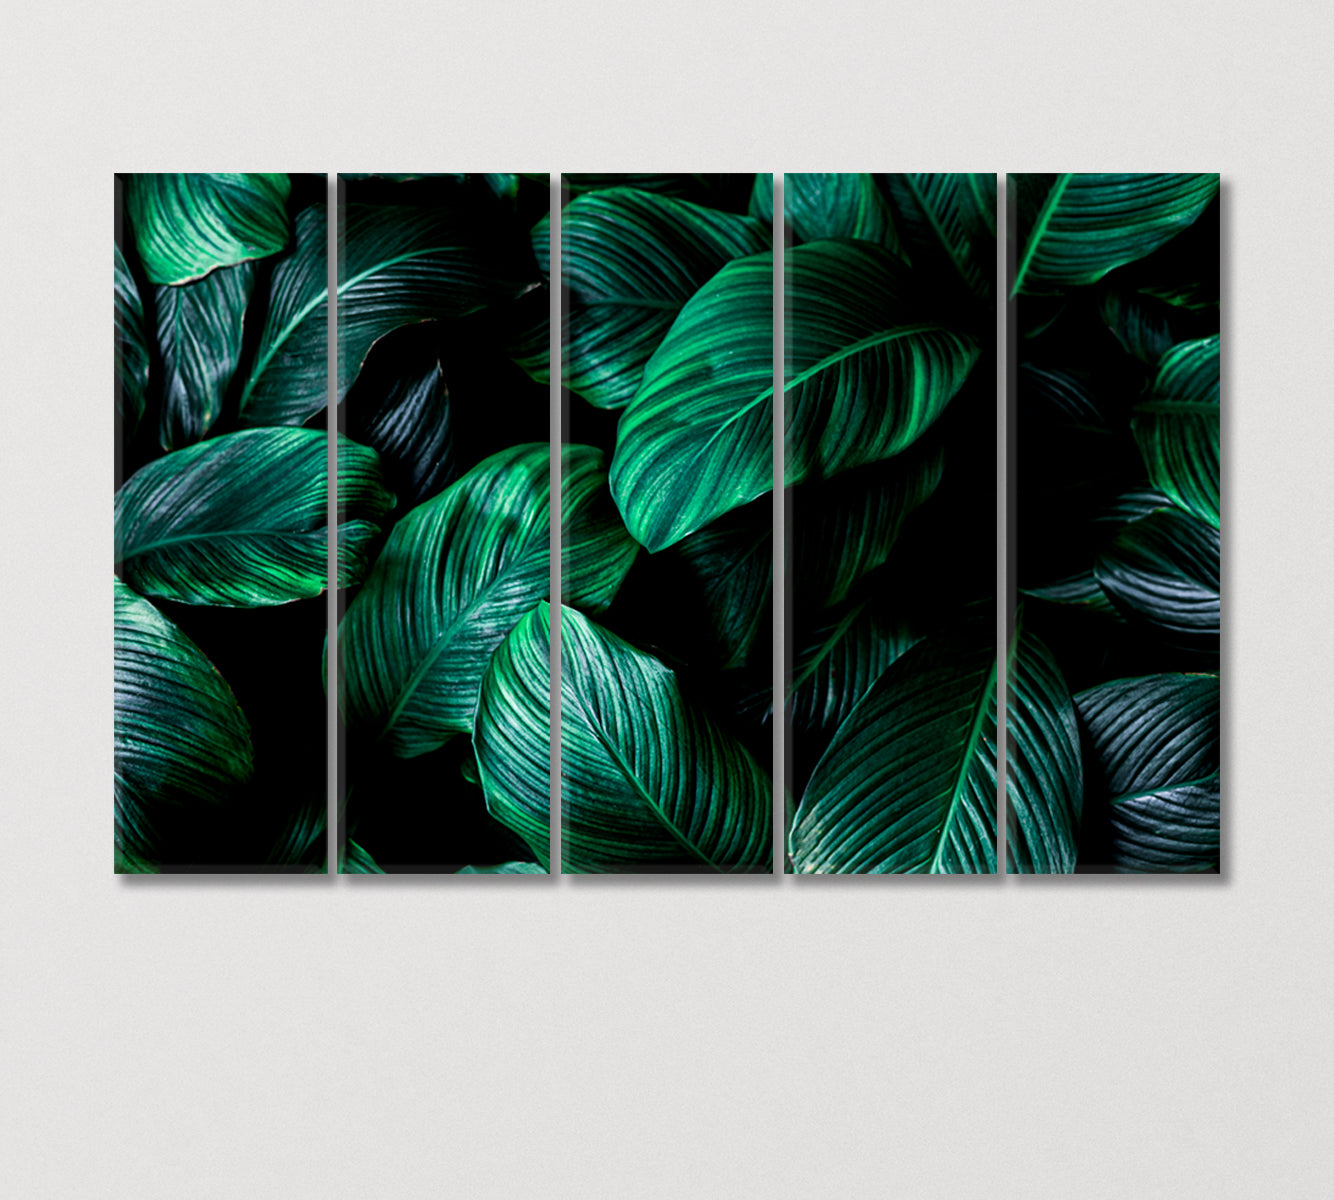 Big Green Tropical Leaf Canvas Print-Canvas Print-CetArt-5 Panels-36x24 inches-CetArt